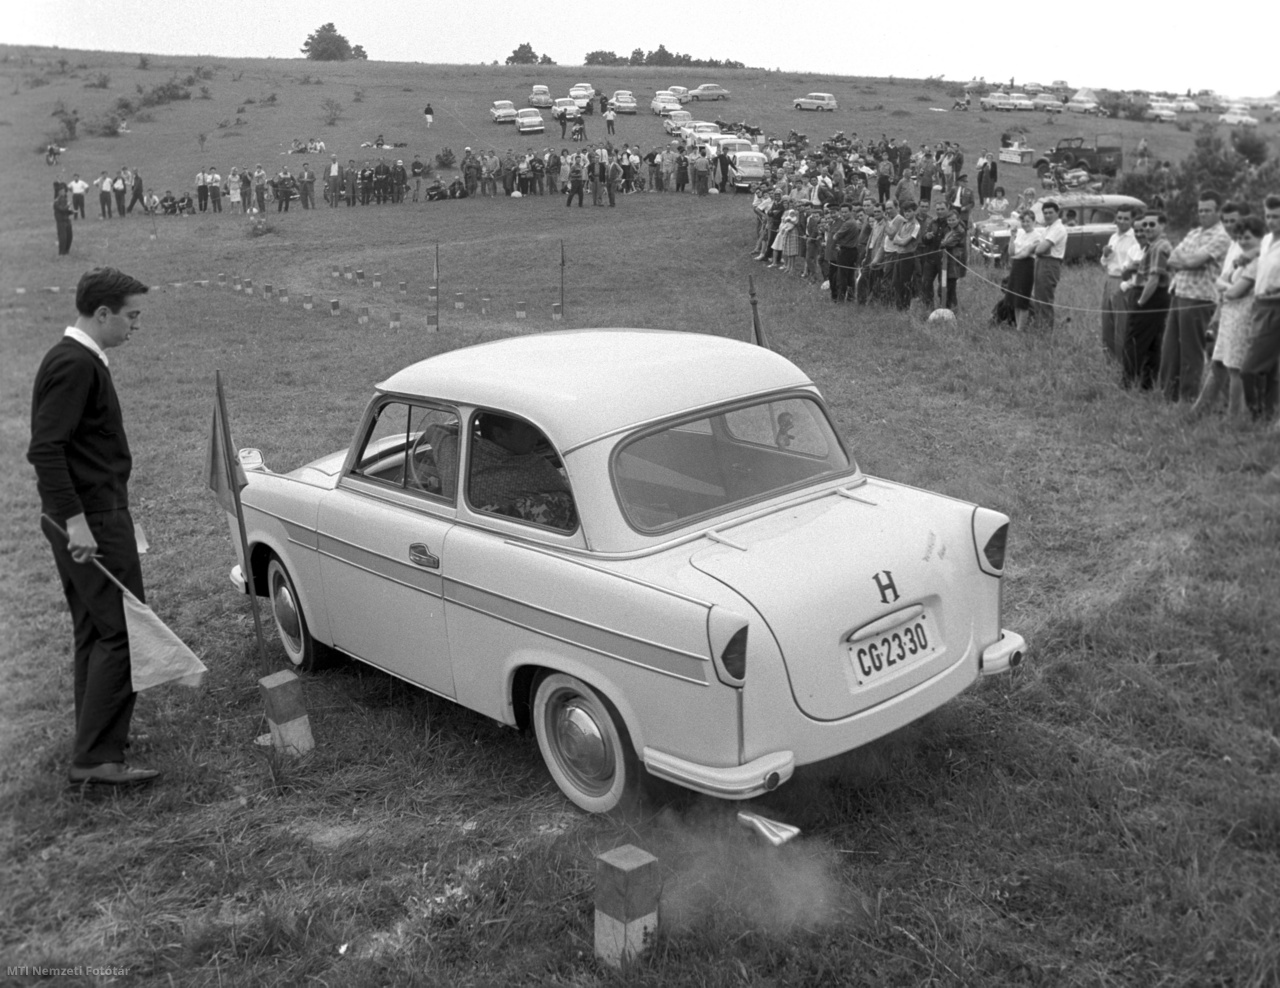 Visegrád, 1965. július 4. A Dunakanyarban, a Nagyvillámi kilátó alatti területen megrendezett autós és motoros találkozó egyik résztvevője egy Trabant P50 típusú személyautóval halad az ügyességi pályán.